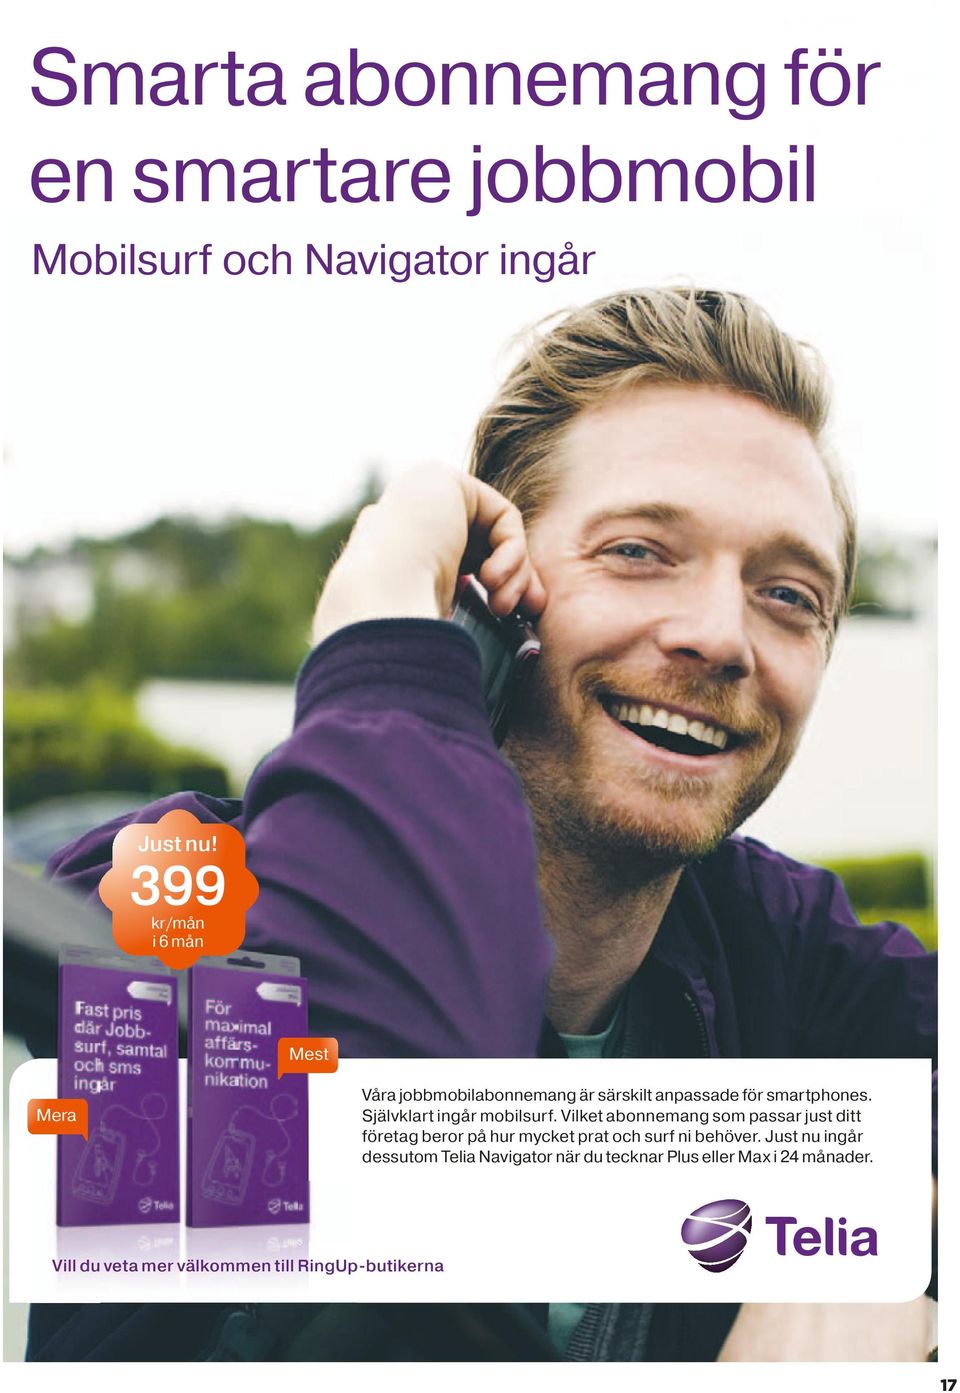 Just nu ingår dessutom Telia Navigator när du tecknar Plus eller Max i 24 månader. Vill du veta mer välkommen till RingUp-butikerna 17 Erbjudandet gäller t.o.m. 22/11 2011.